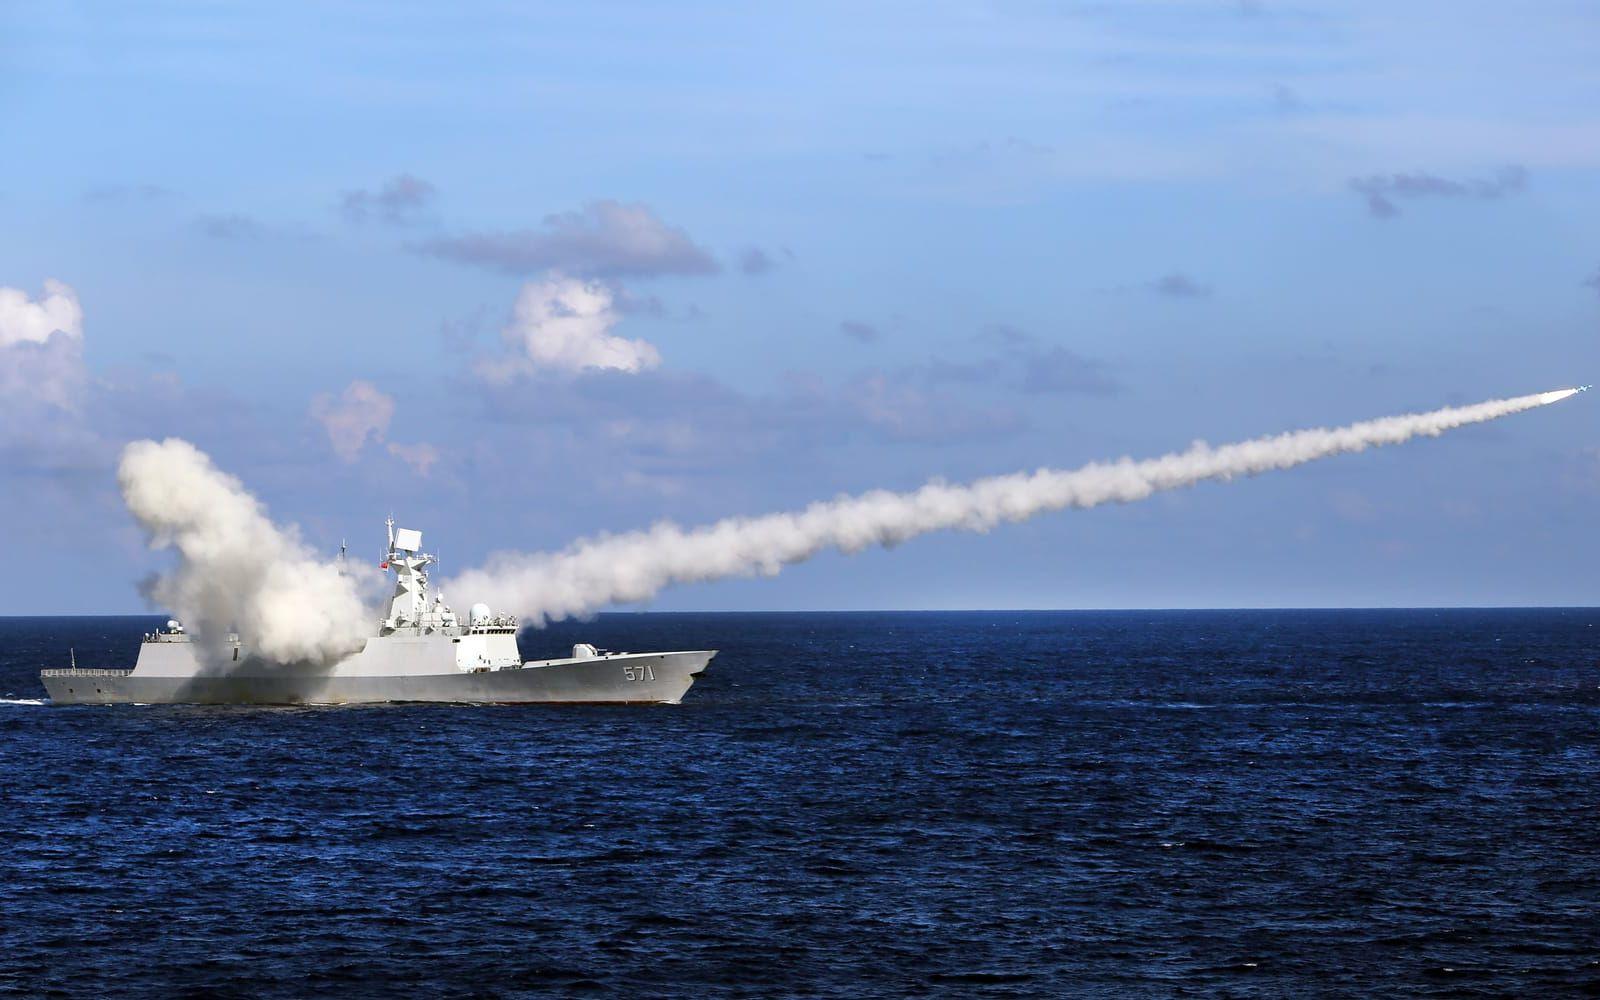 Kinas militära närvaro i Sydkinesiska sjön har ökat spänningarna med omvärlden, inte minst med Taiwan. Här syns fregatten Yuncheng avfyra en sjömålsrobot vid en flottövning utanför kinesiska ön Hainan 2016.